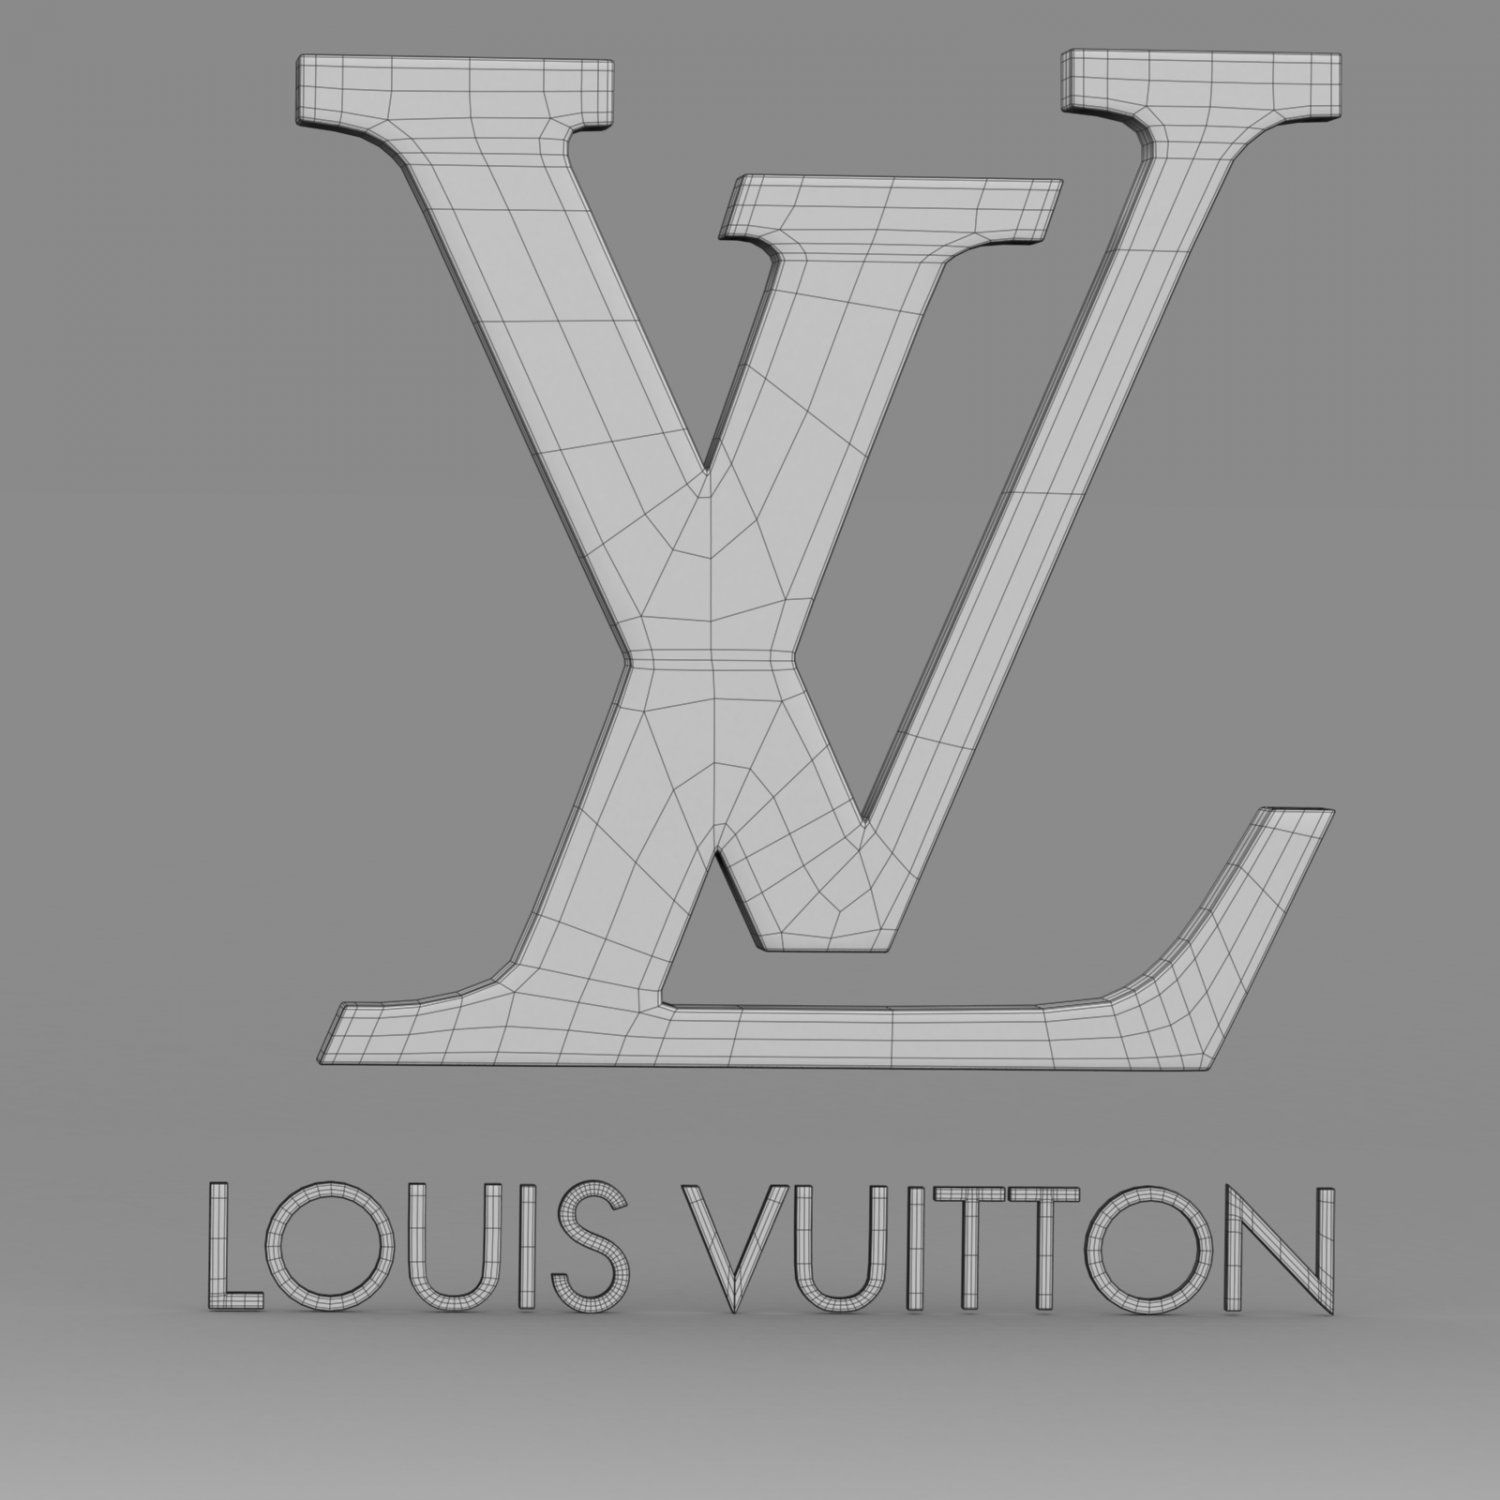 276 Vuitton modèles dimpression 3D